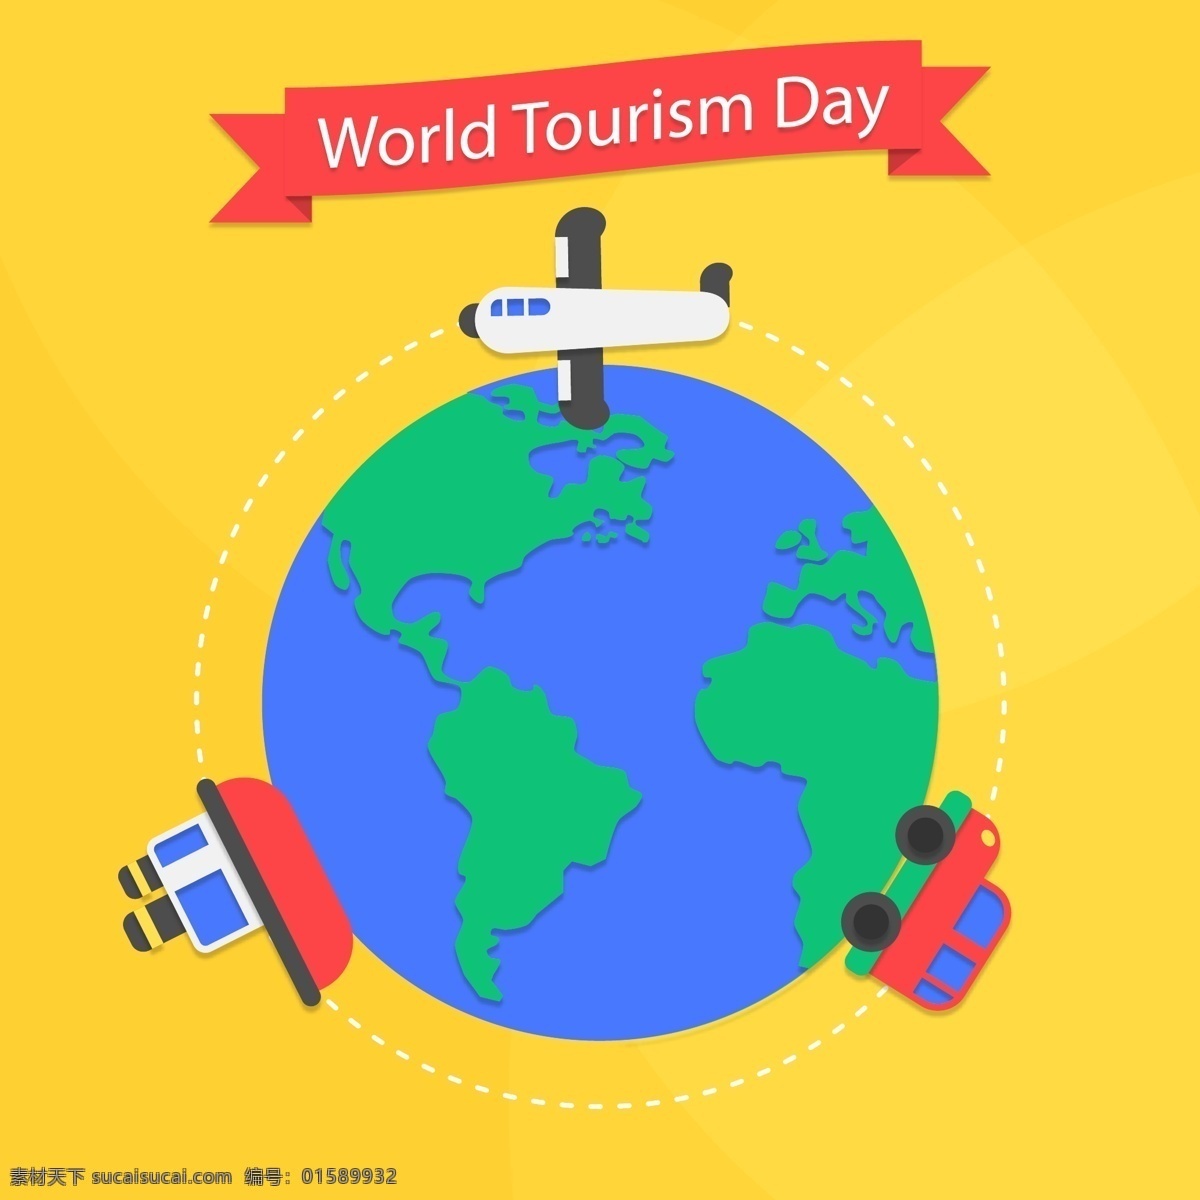 卡通 世界 旅行 日 地球 矢量 条幅 轨迹 world tourism day 世界旅行日 飞机 轮船 车 名片卡片